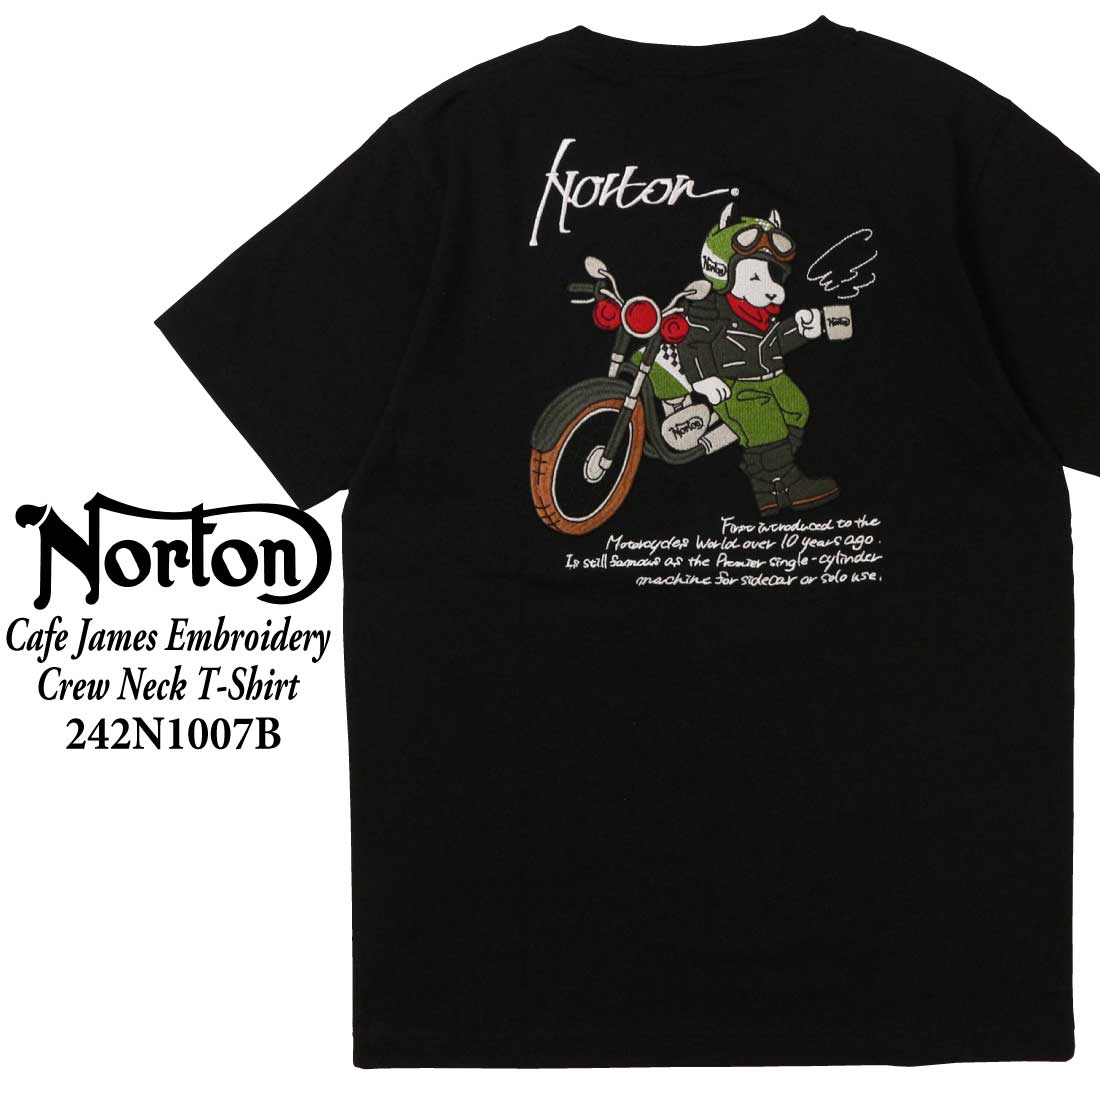 Norton ノートン 服  半袖 Tシャツ 242N1007B カフェ ジェームス 刺繍 Tシャツ...